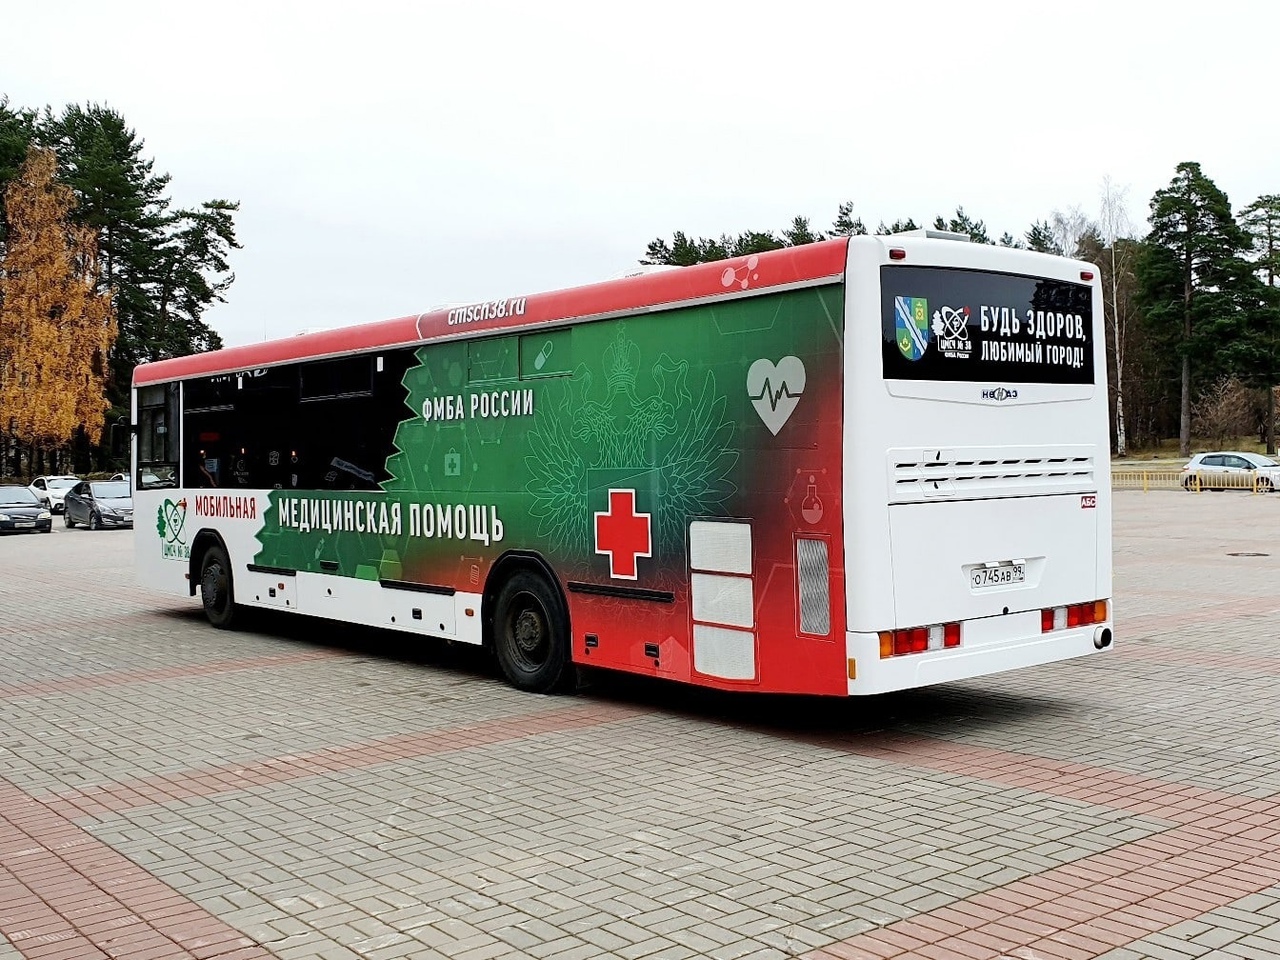 Время работы прививочных автобусов в Сосновом Бору будет увеличено